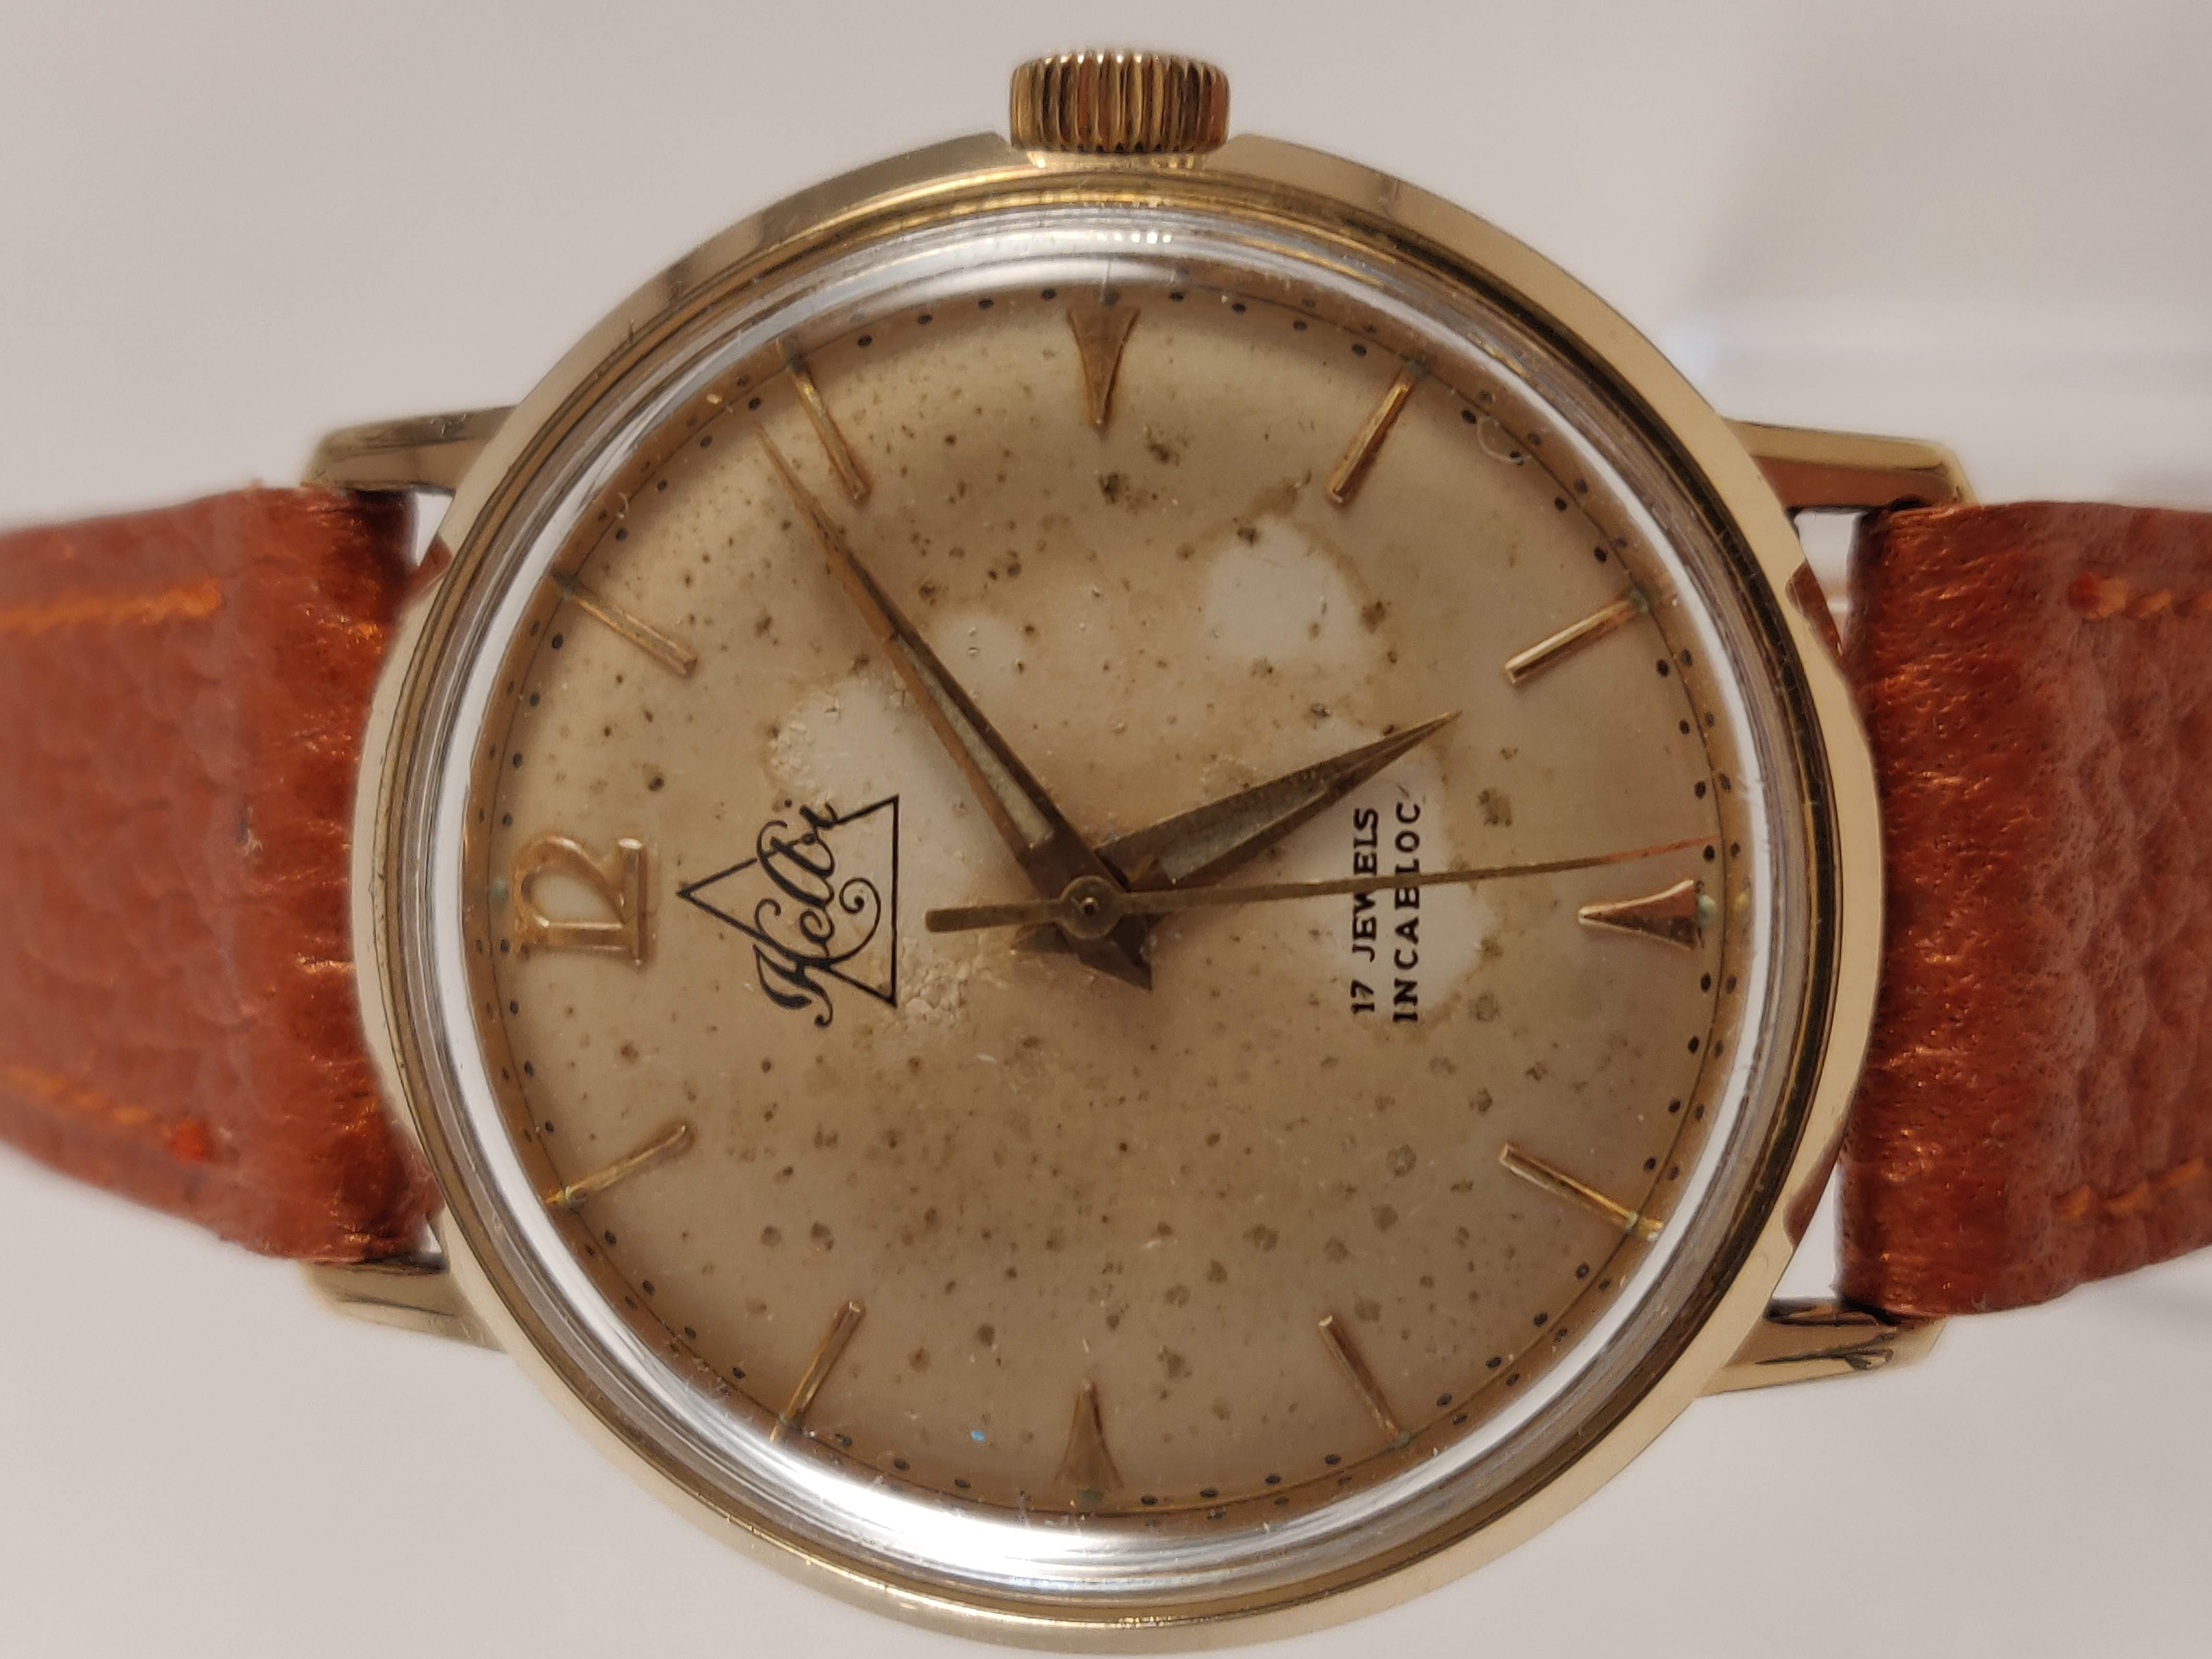 Kelbi Vintage Heren Horloge